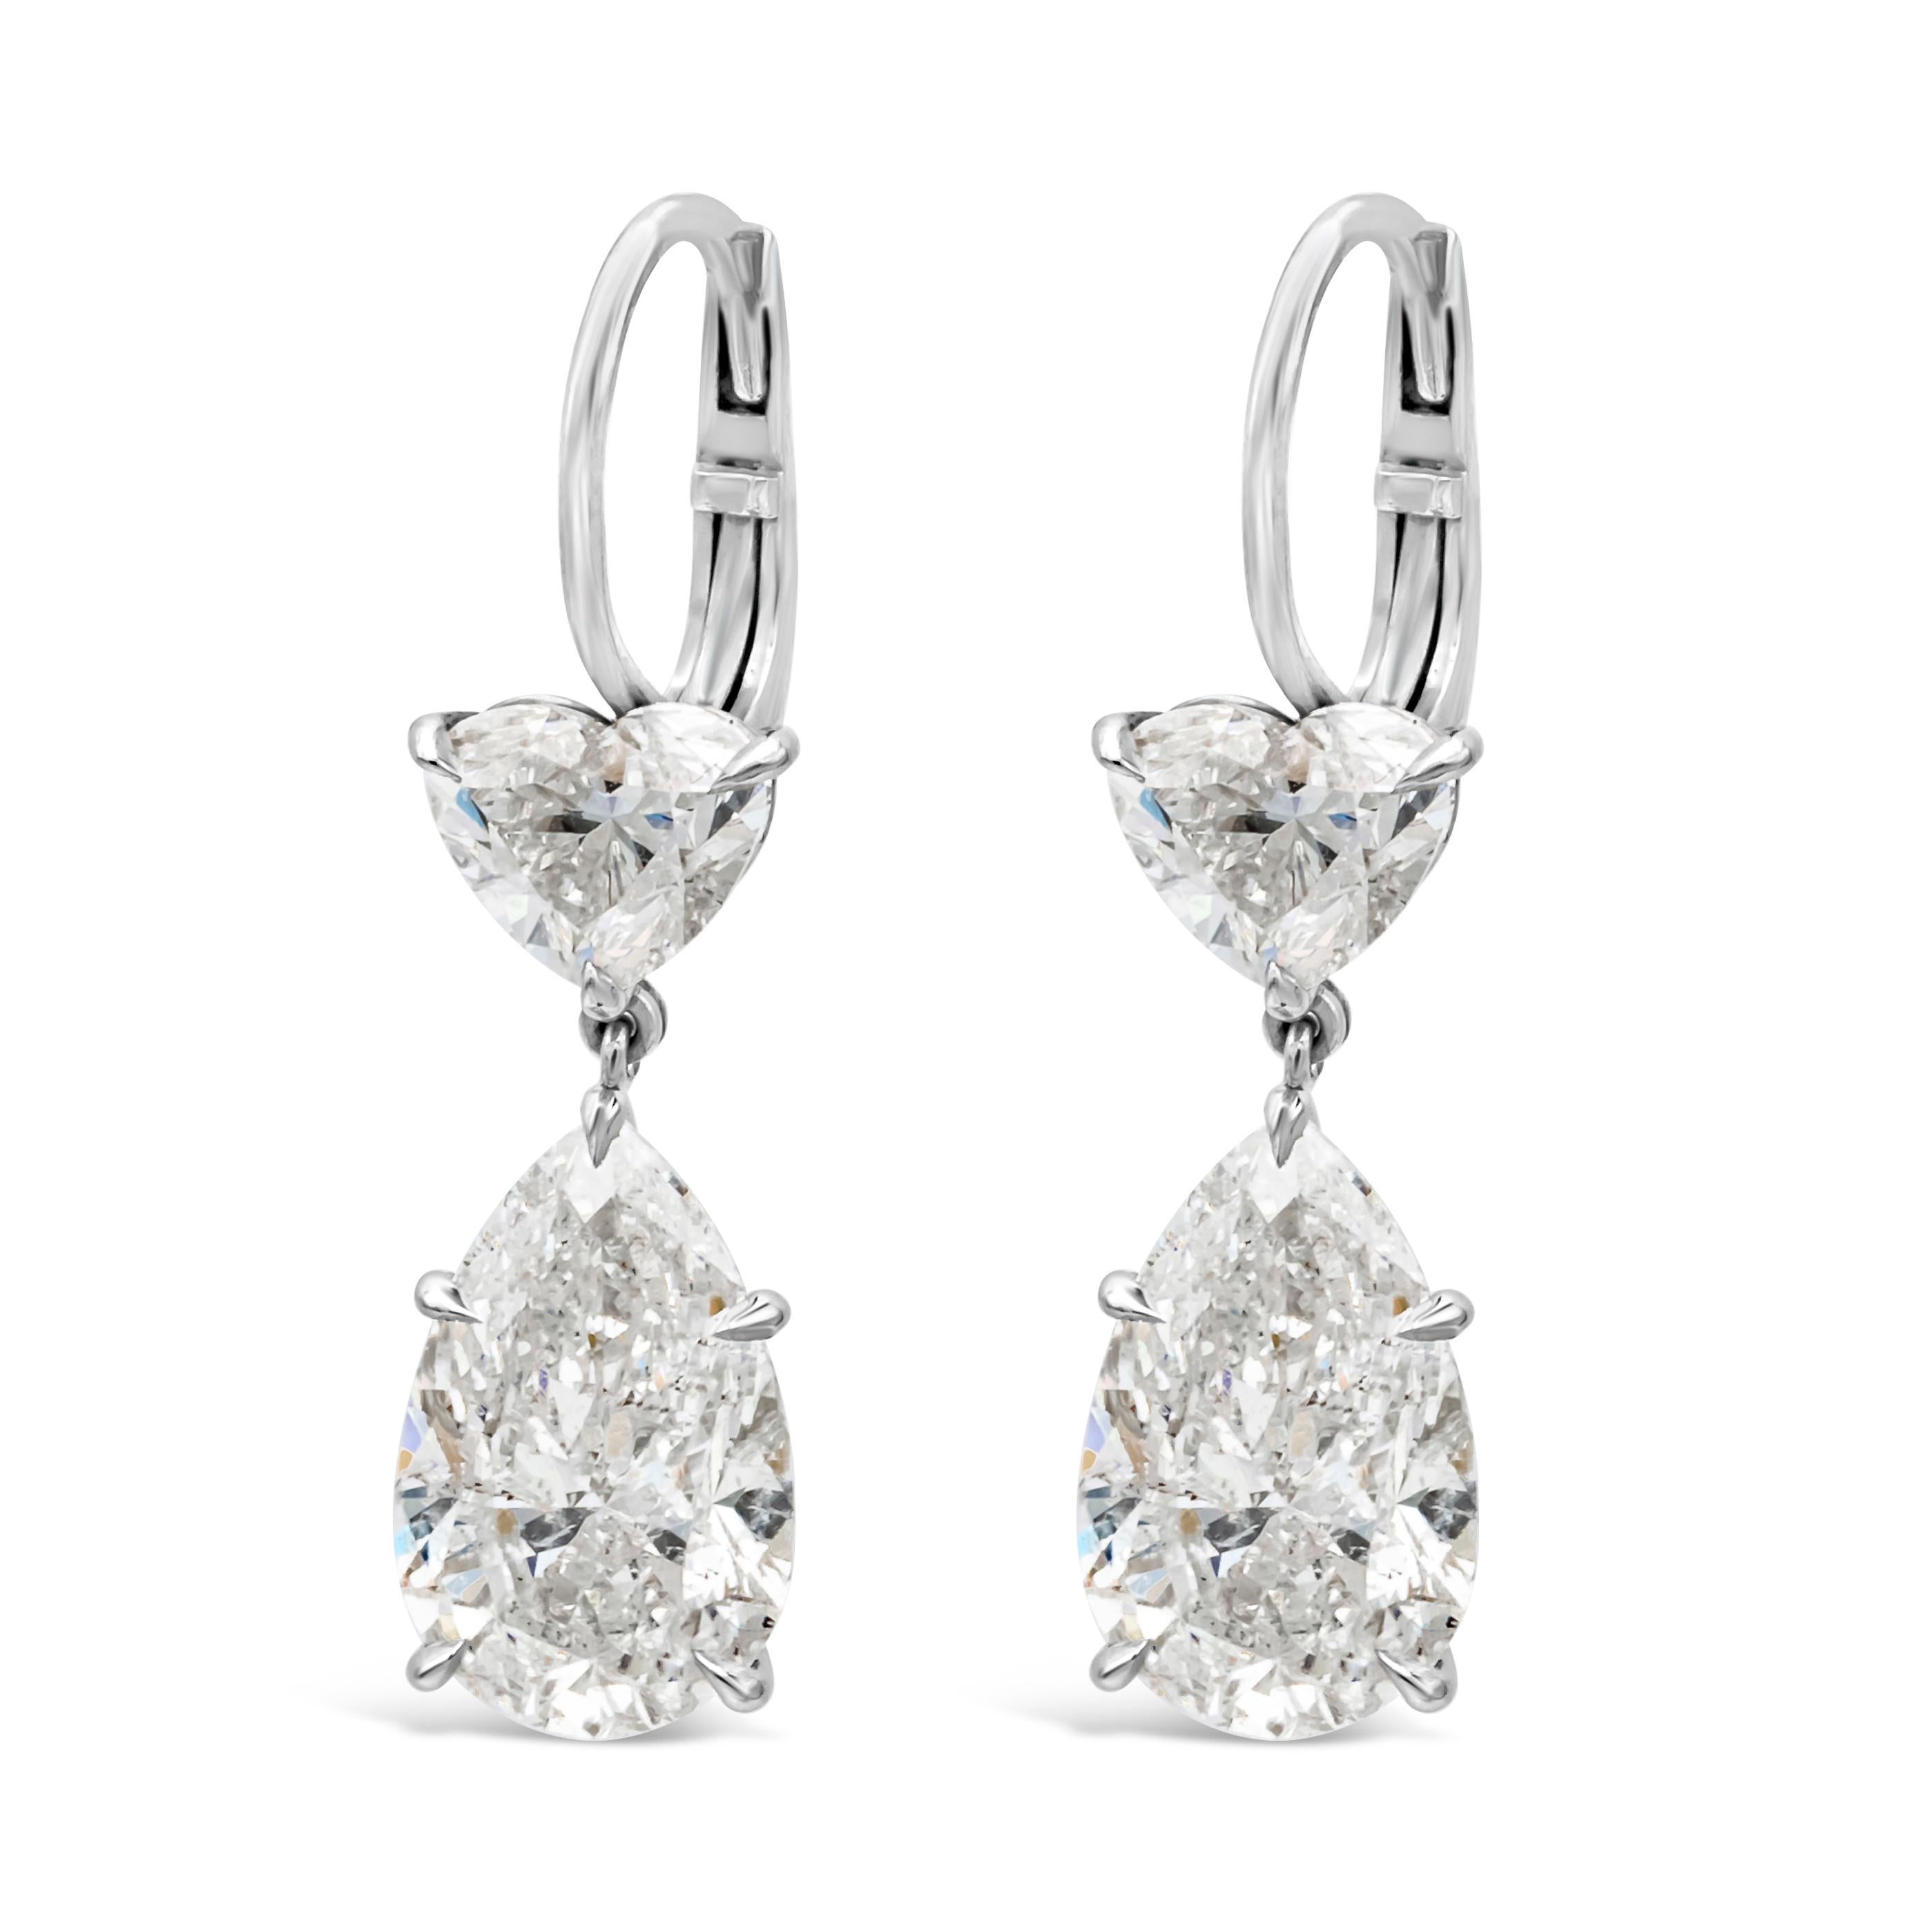 Ein edles und gut verarbeitetes Paar hochwertiger Ohrhänger mit GIA-zertifizierten birnenförmigen und brillanten herzförmigen Diamanten, die elegant aneinander hängen. Die birnenförmigen Diamanten wiegen insgesamt 6,07 Karat, Farbe F-G und Reinheit